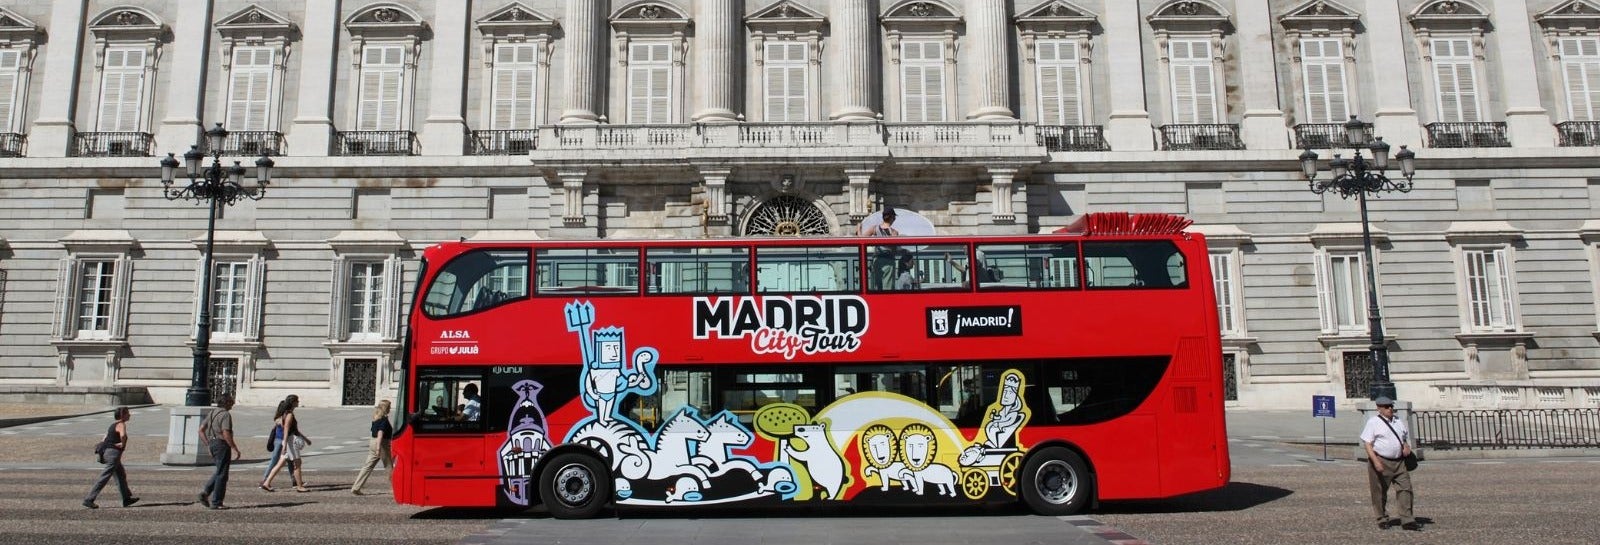 Bus touristique de Madrid